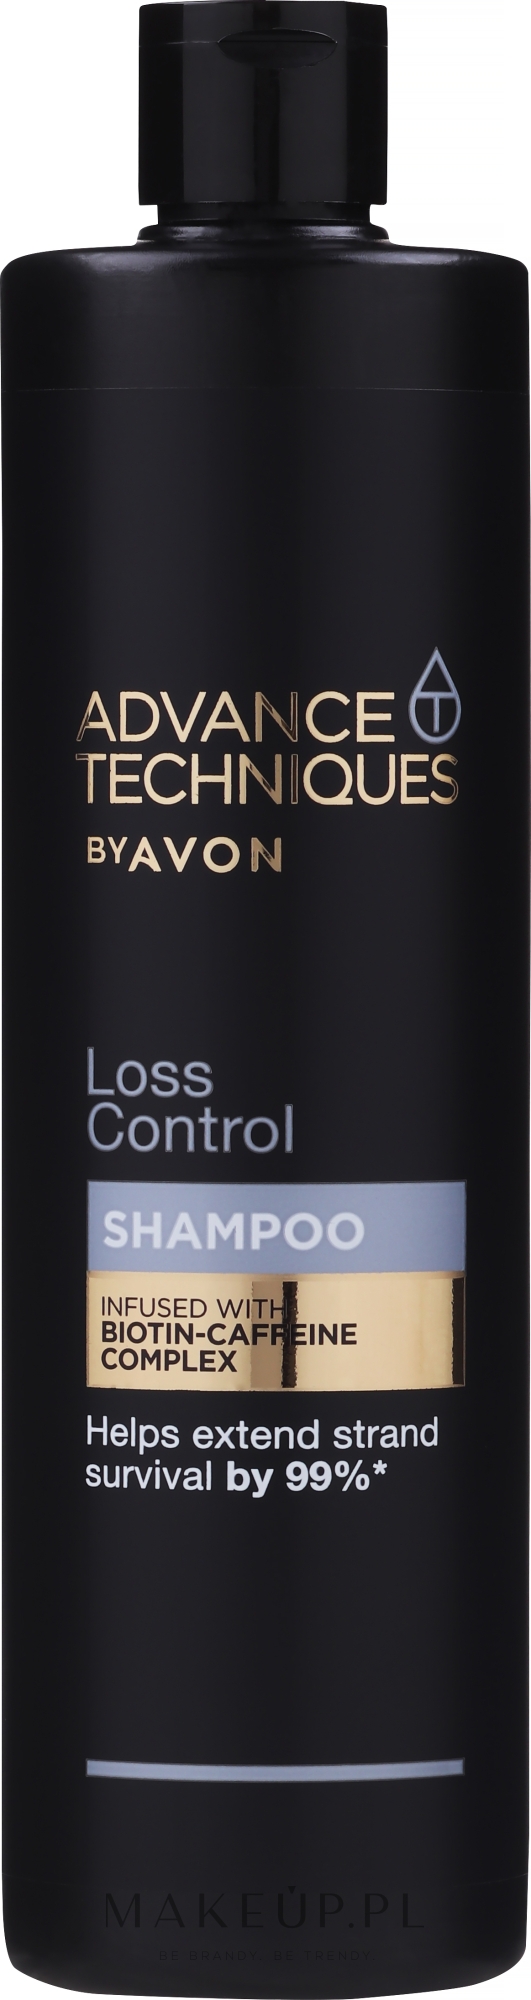 advance techniques avon szampon